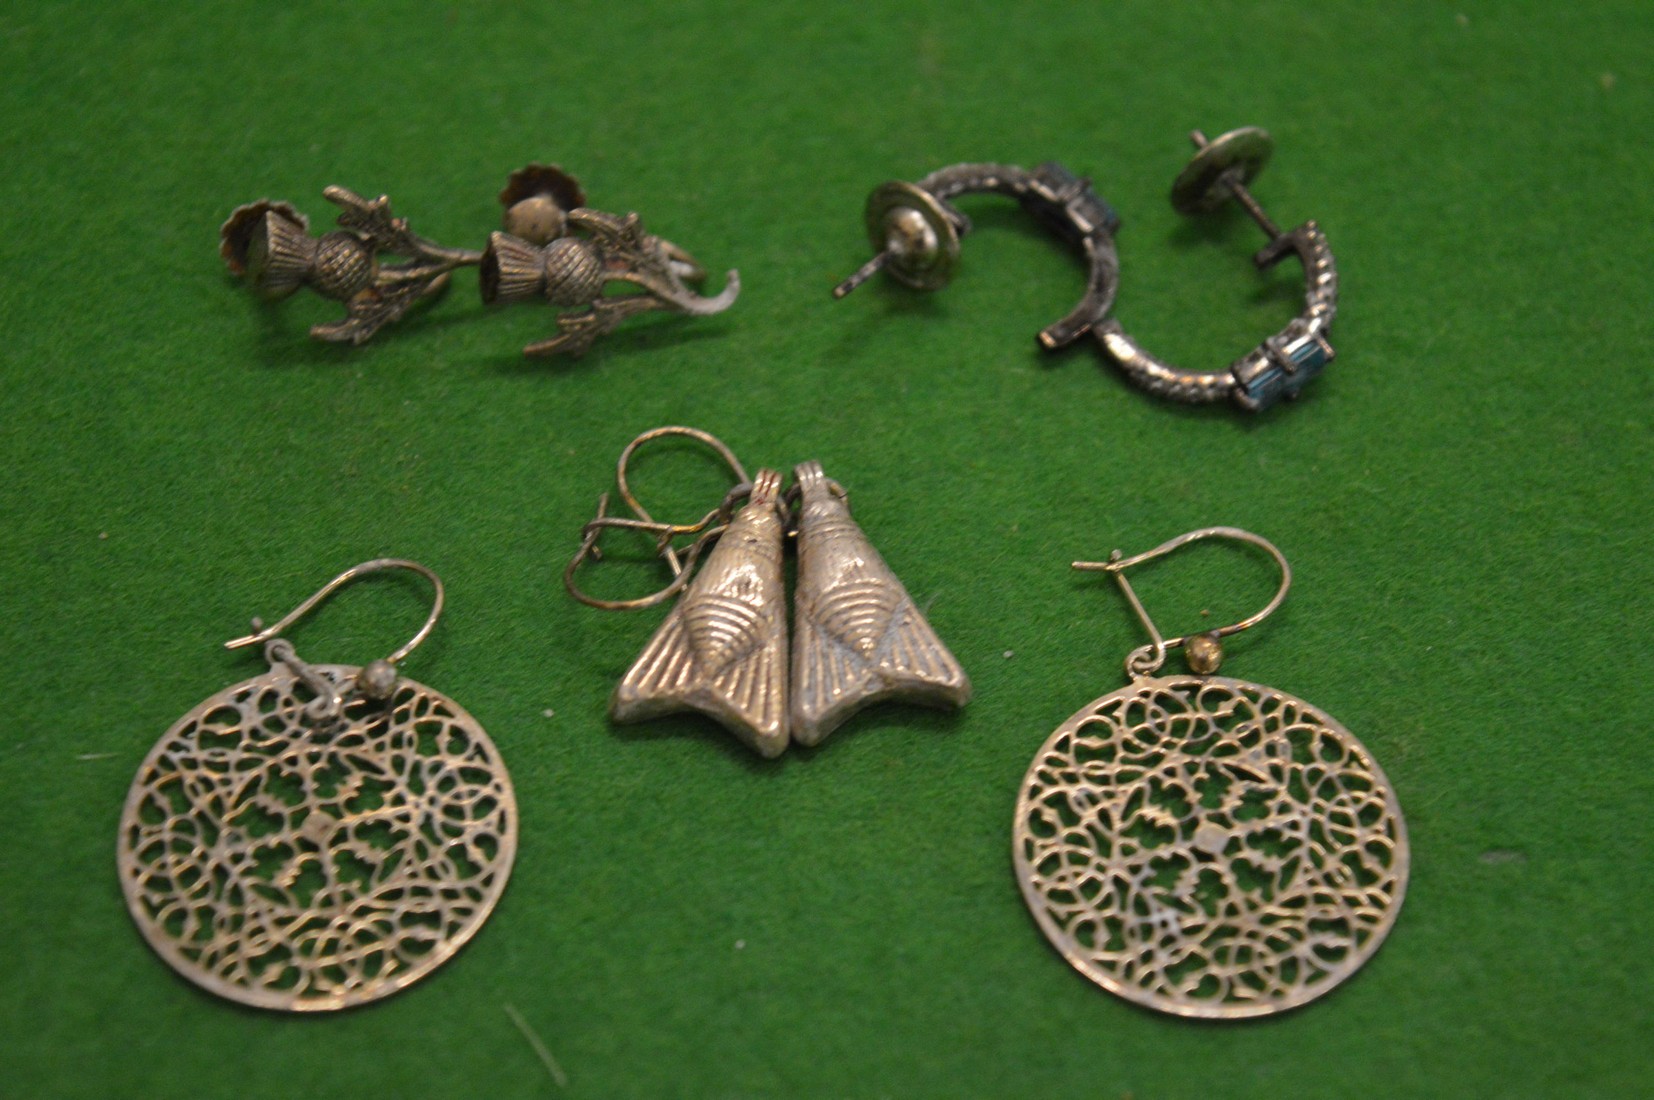 Decorative silver earrings.